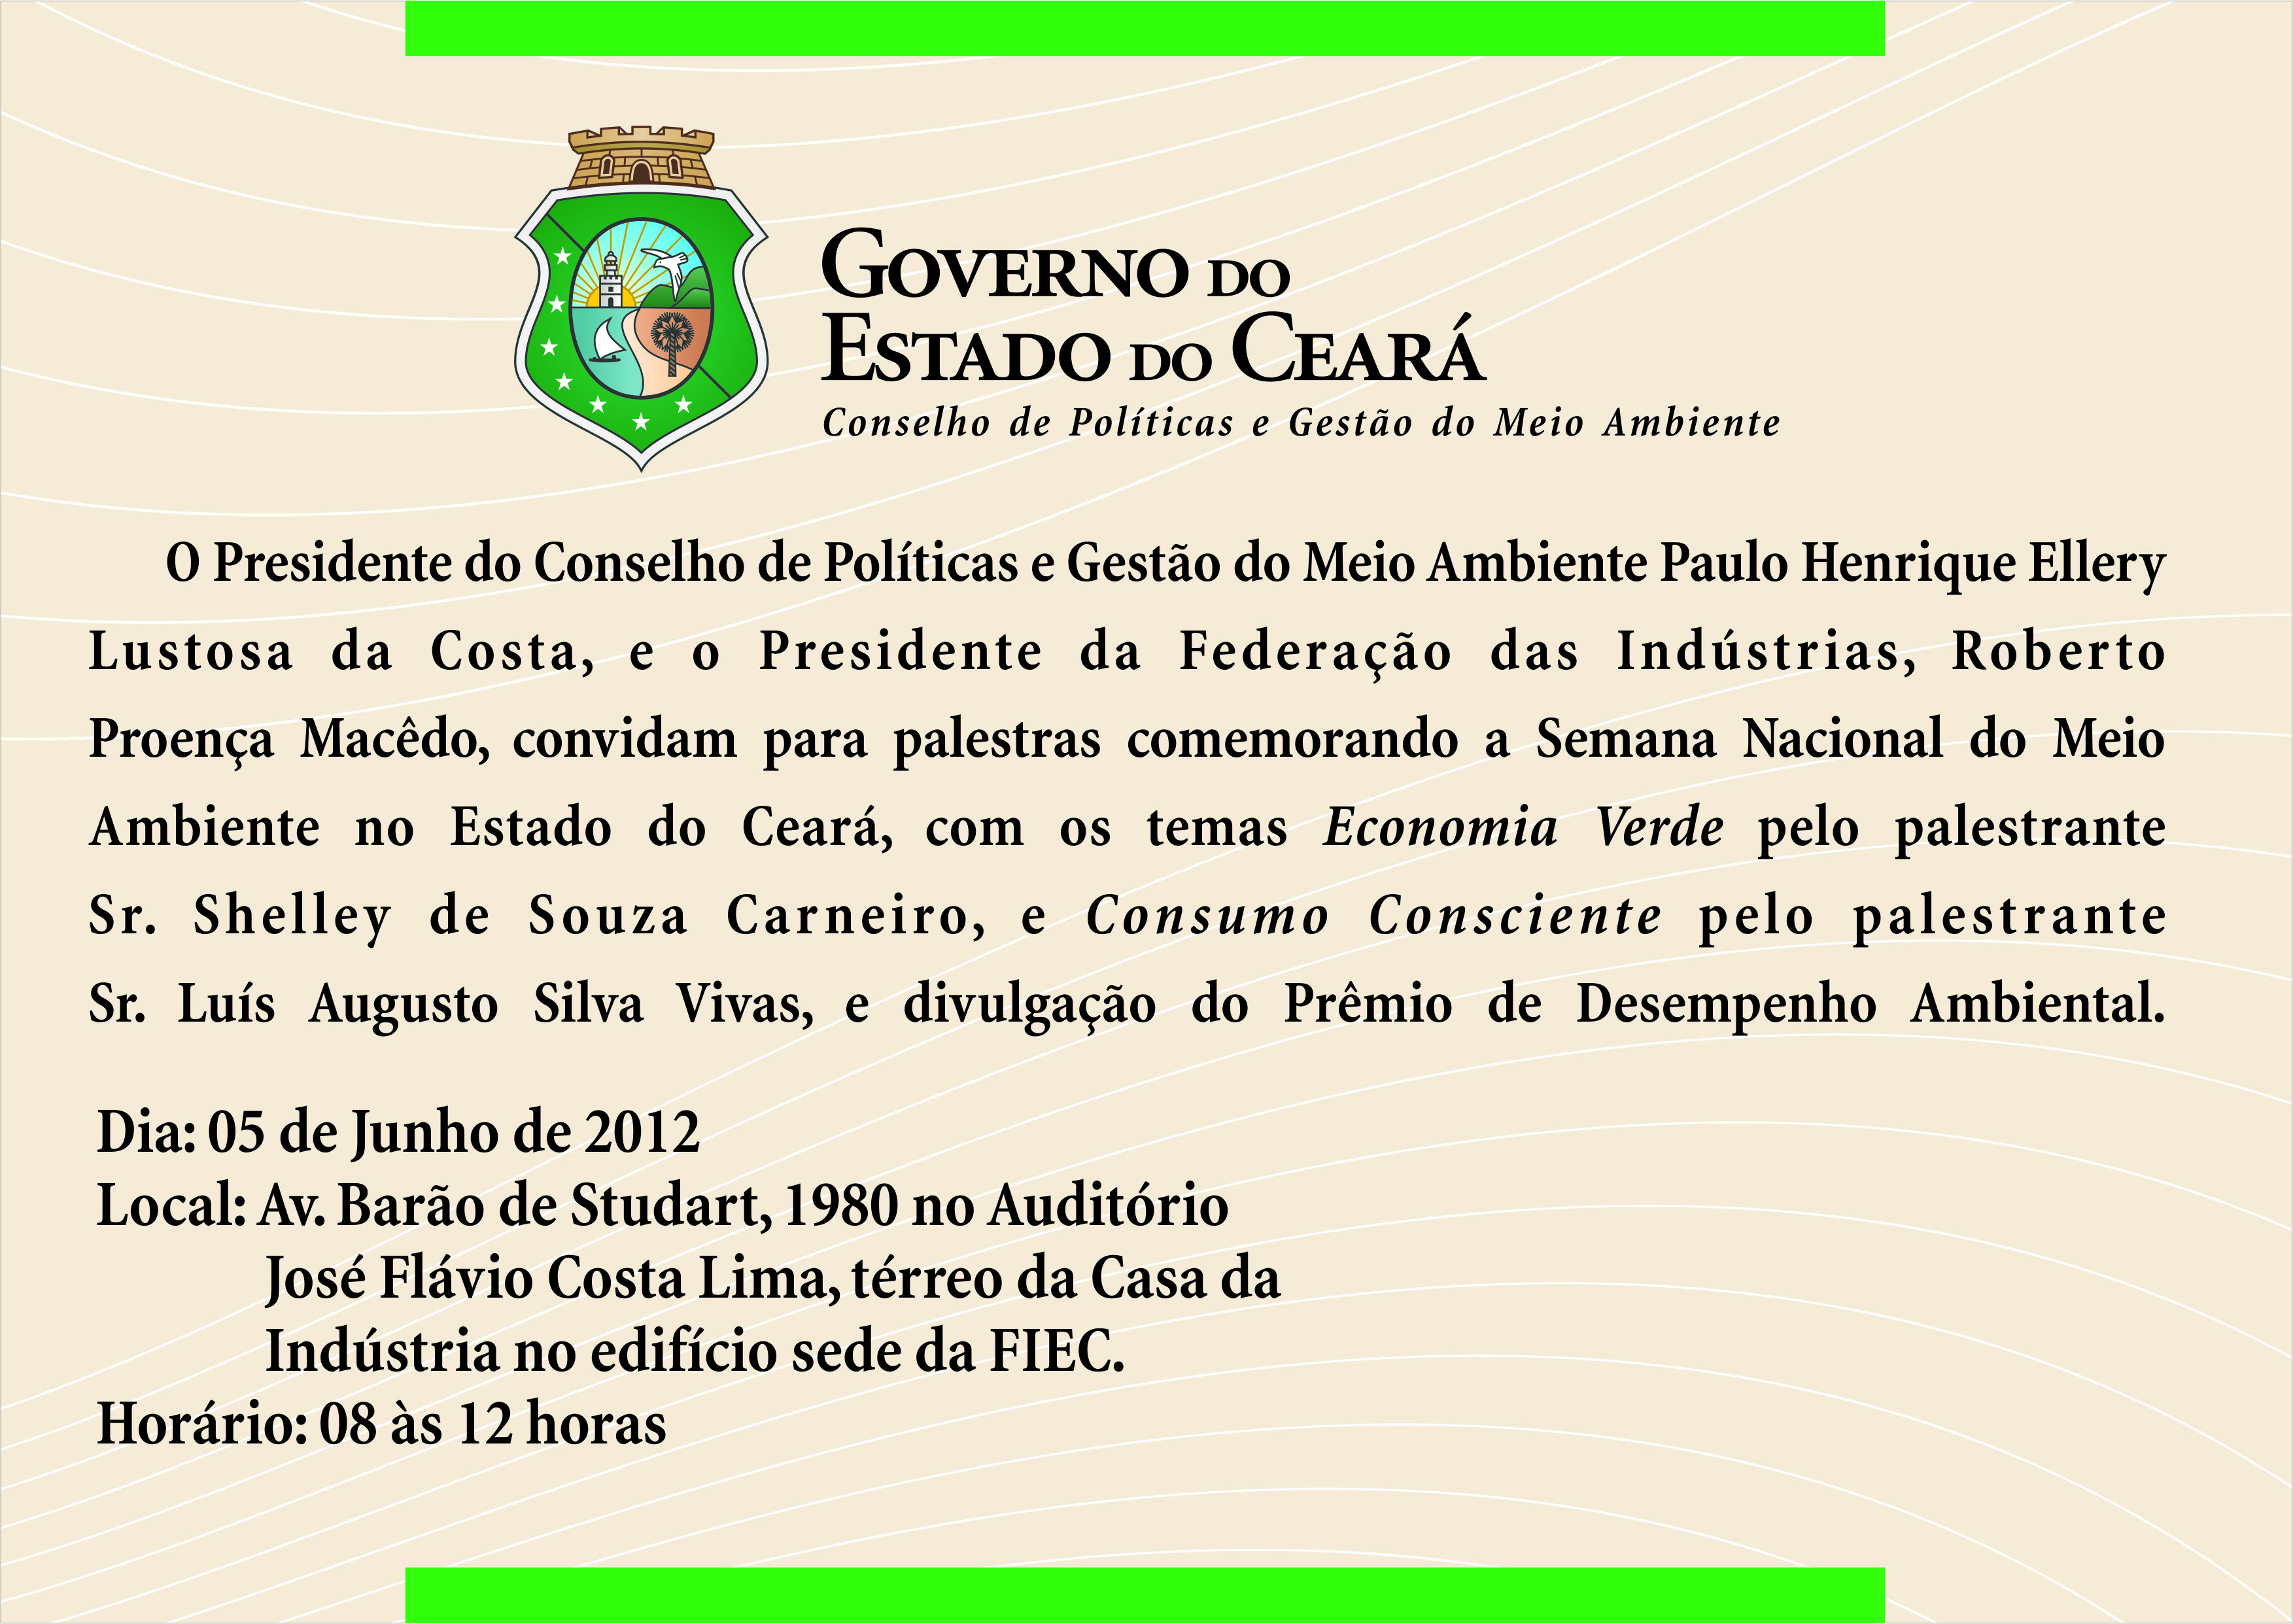 Convite da Semana Nacional do Meio Ambiente no Estado do Ceará